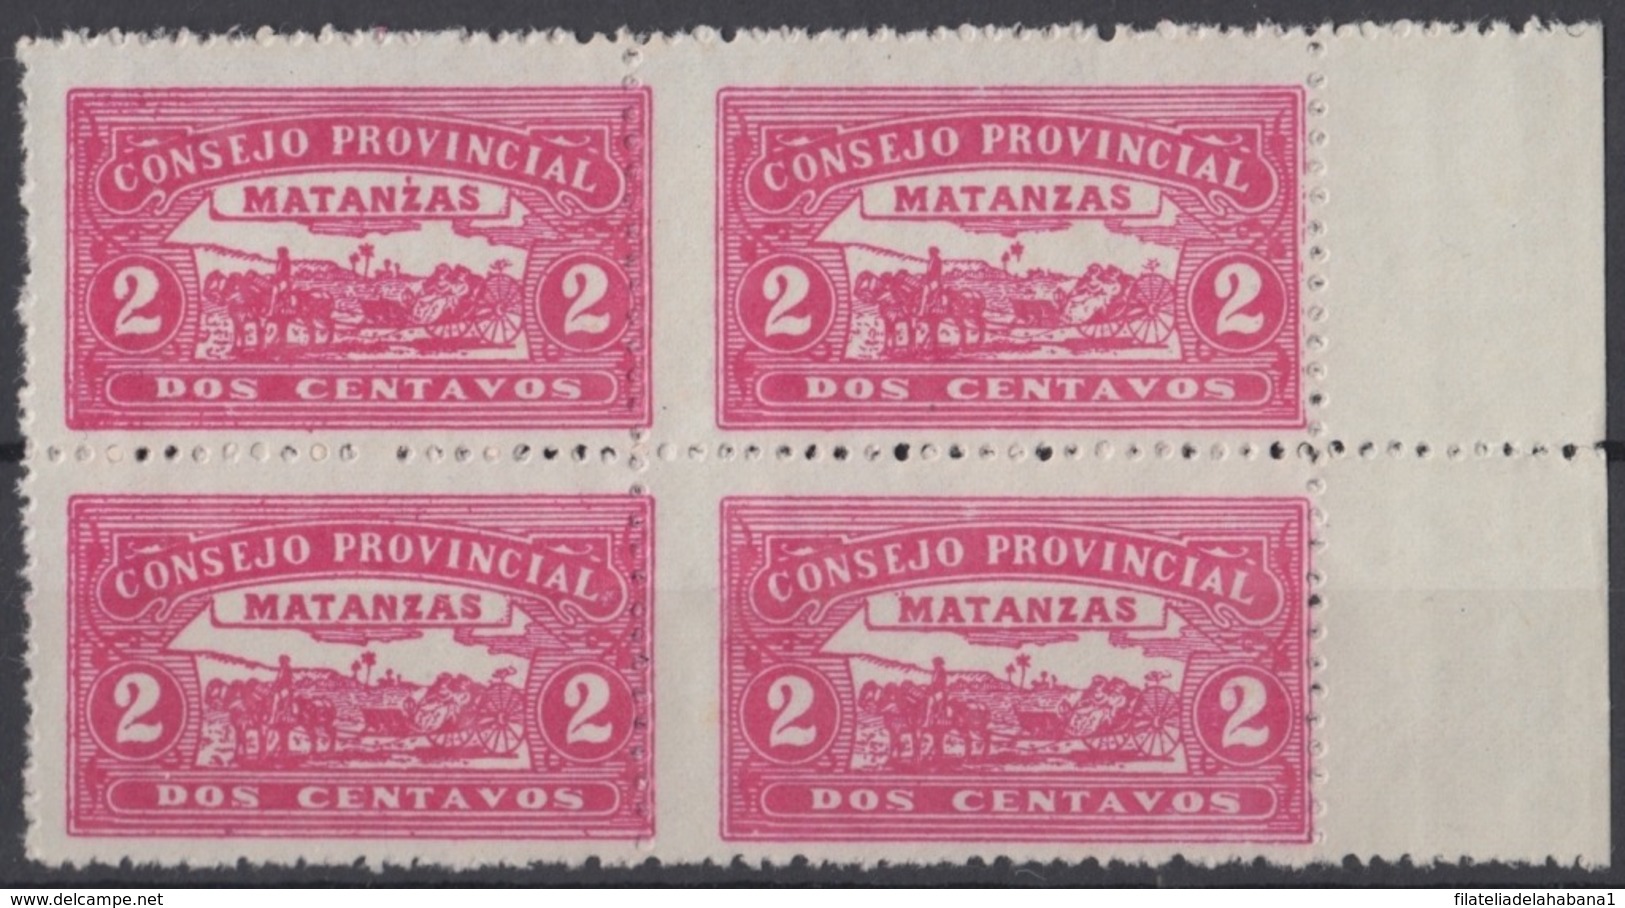 LOC-81 CUBA REPUBLICA. 1903. LOCAL REVENUE MATANZAS. 2c PERFORATED BLOCK 4. ORIGINAL GUM. - Timbres-taxe